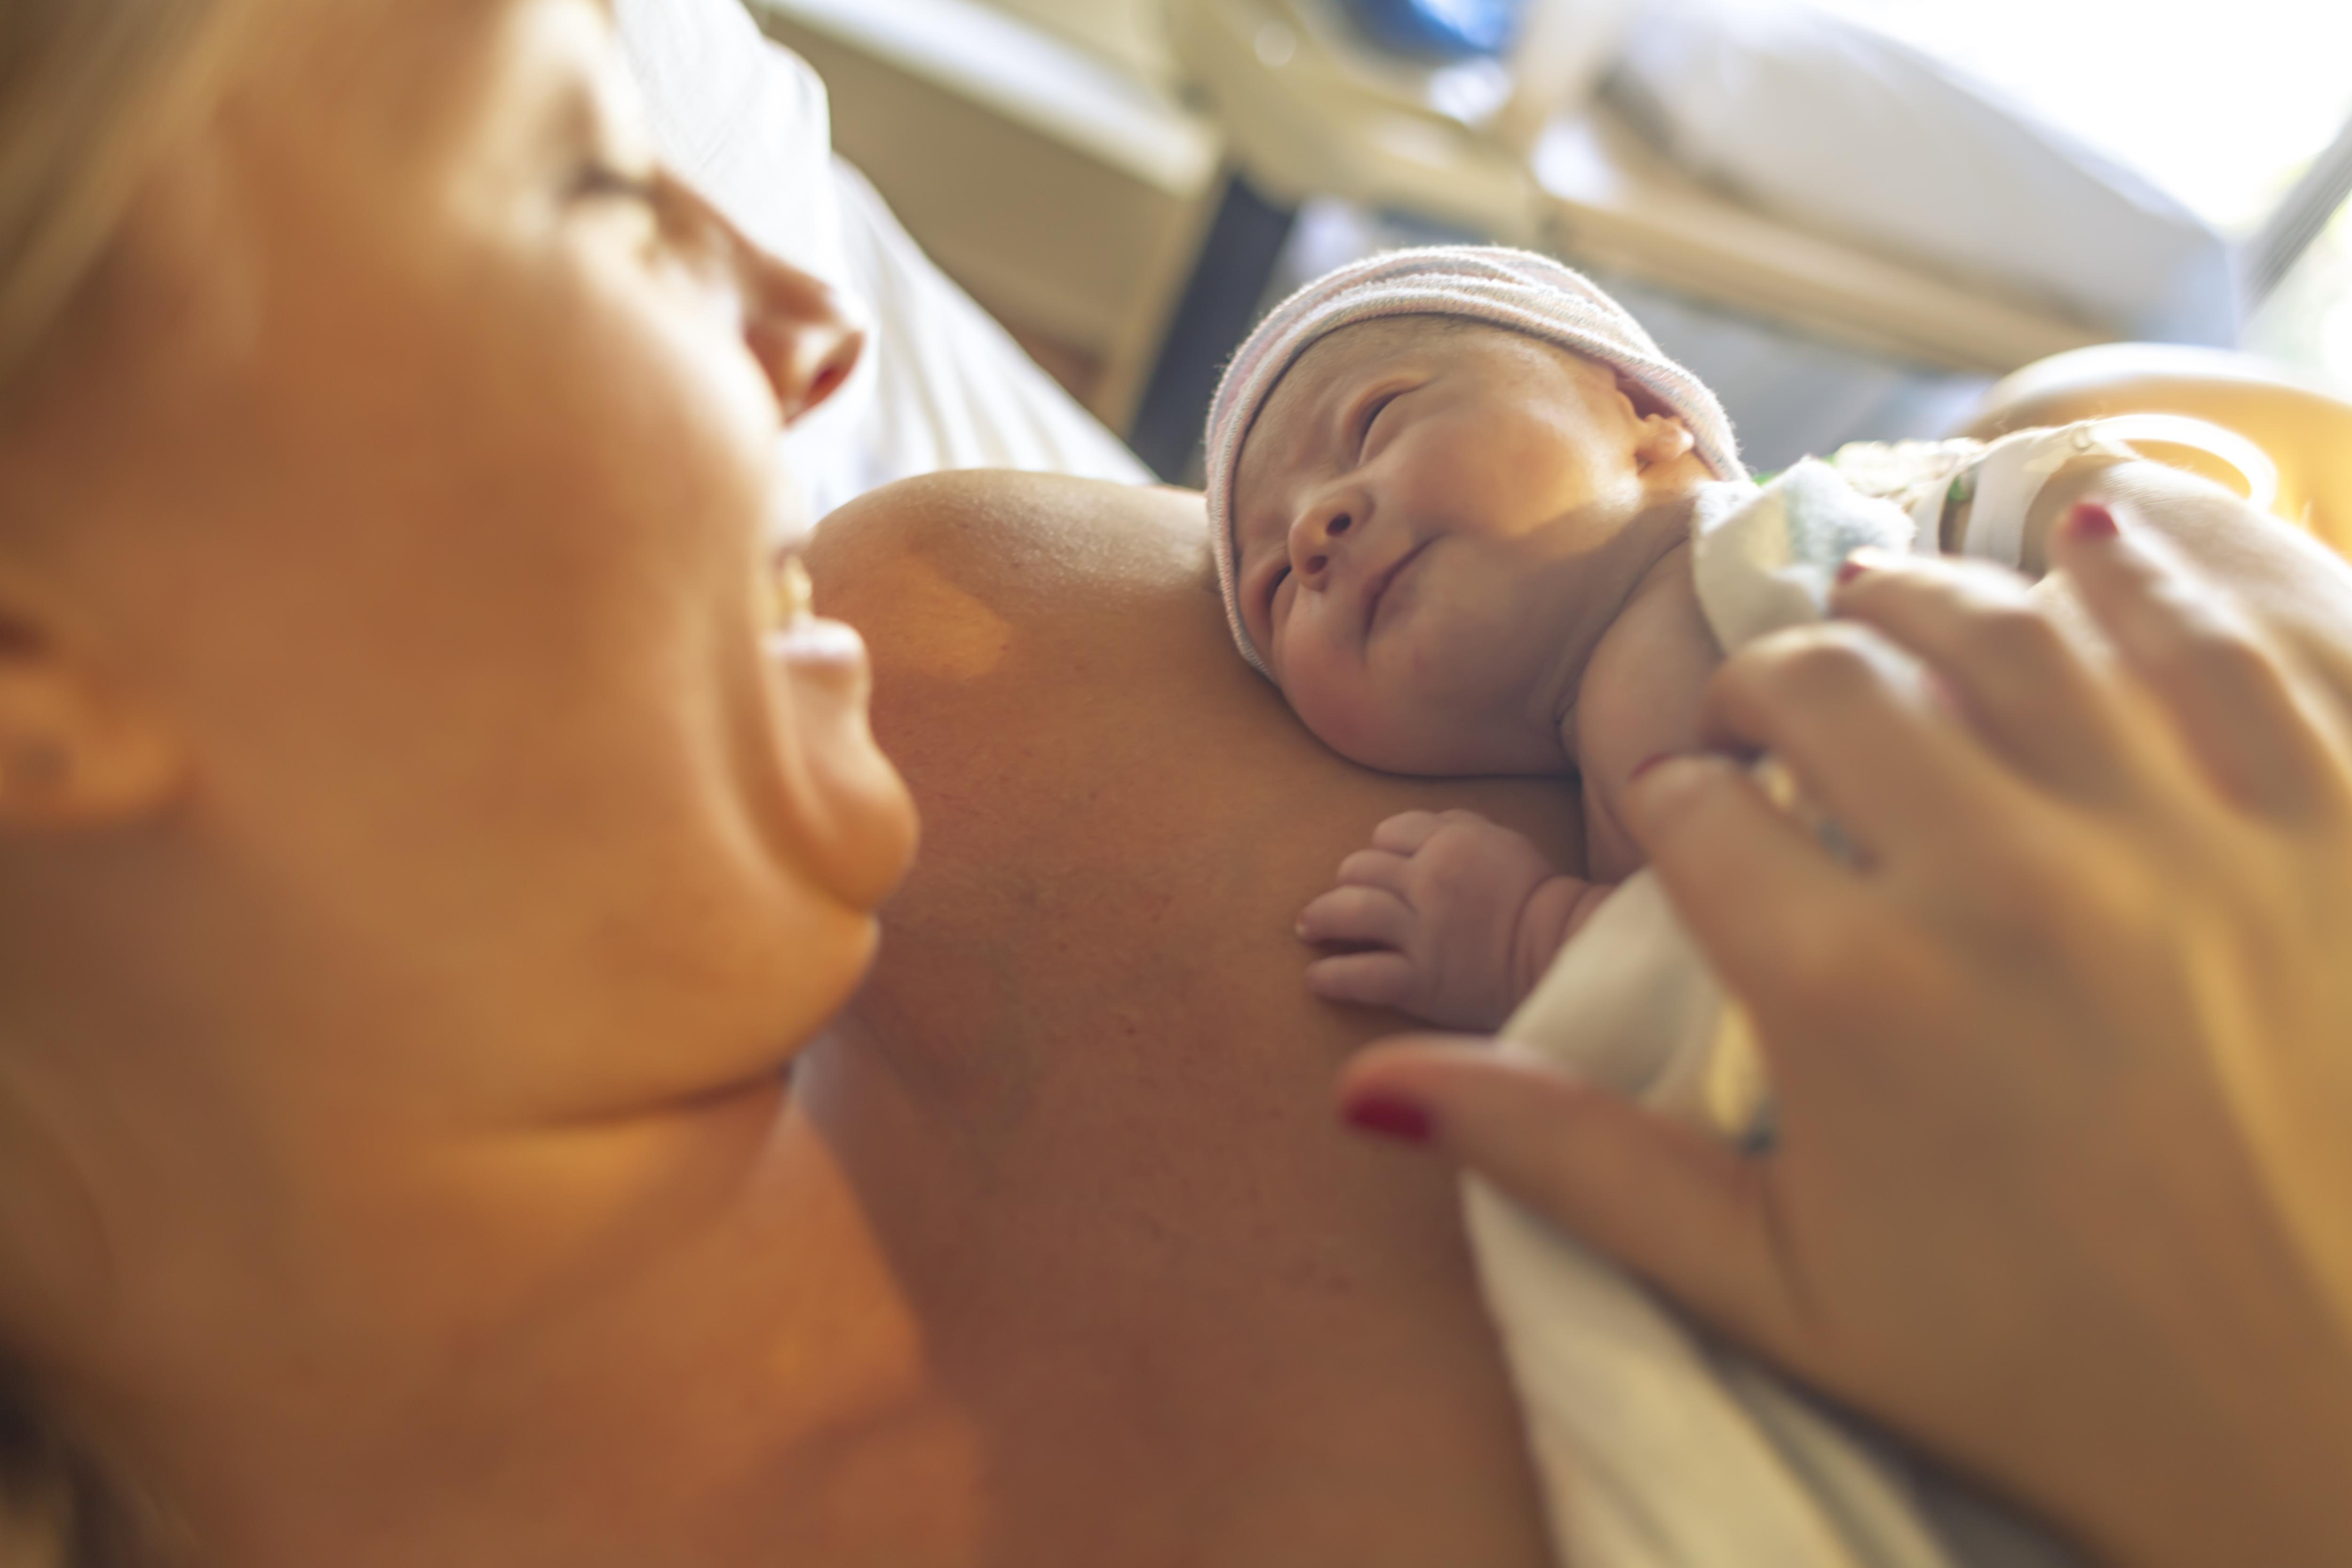 Фото №1 - «Договорилась с будущим ребенком о дате родов»: 10 невероятных историй мам